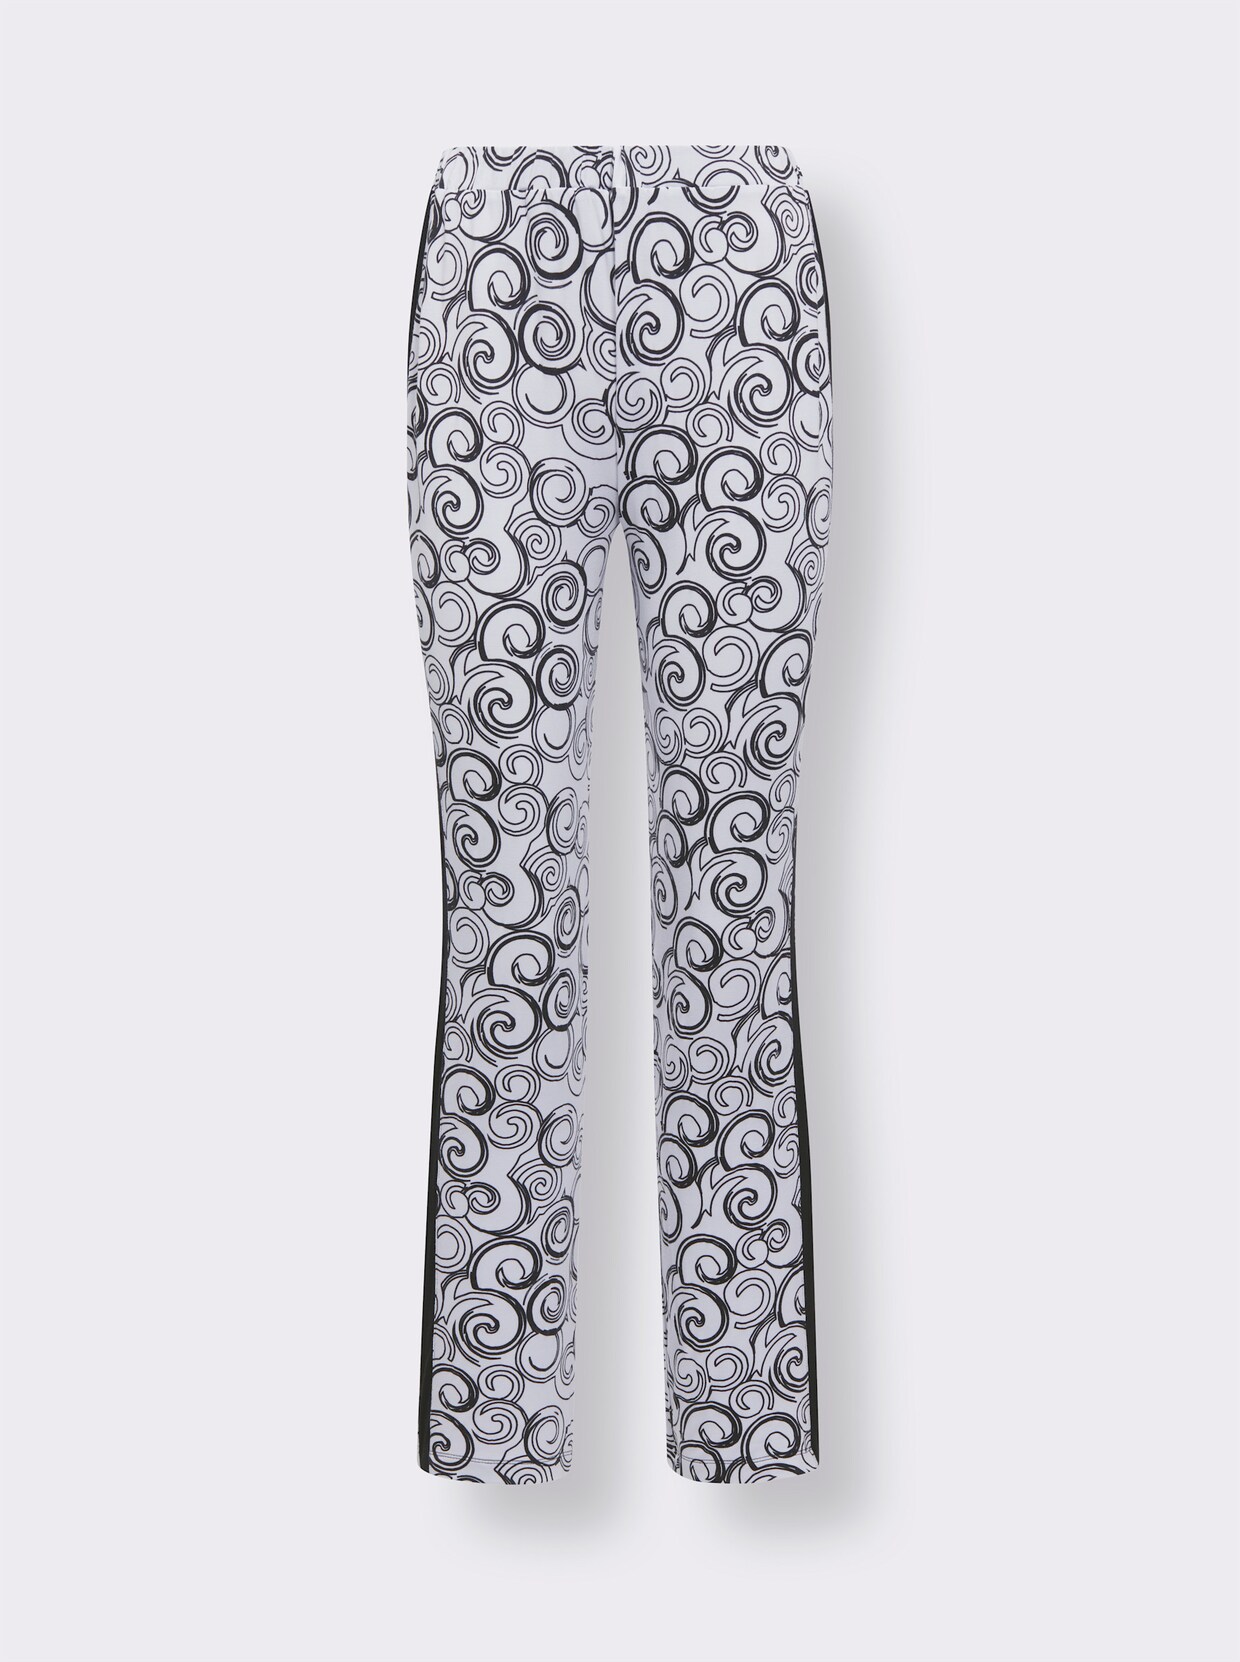 wäschepur Modal-Schlafanzug - schwarz-weiß-bedruckt